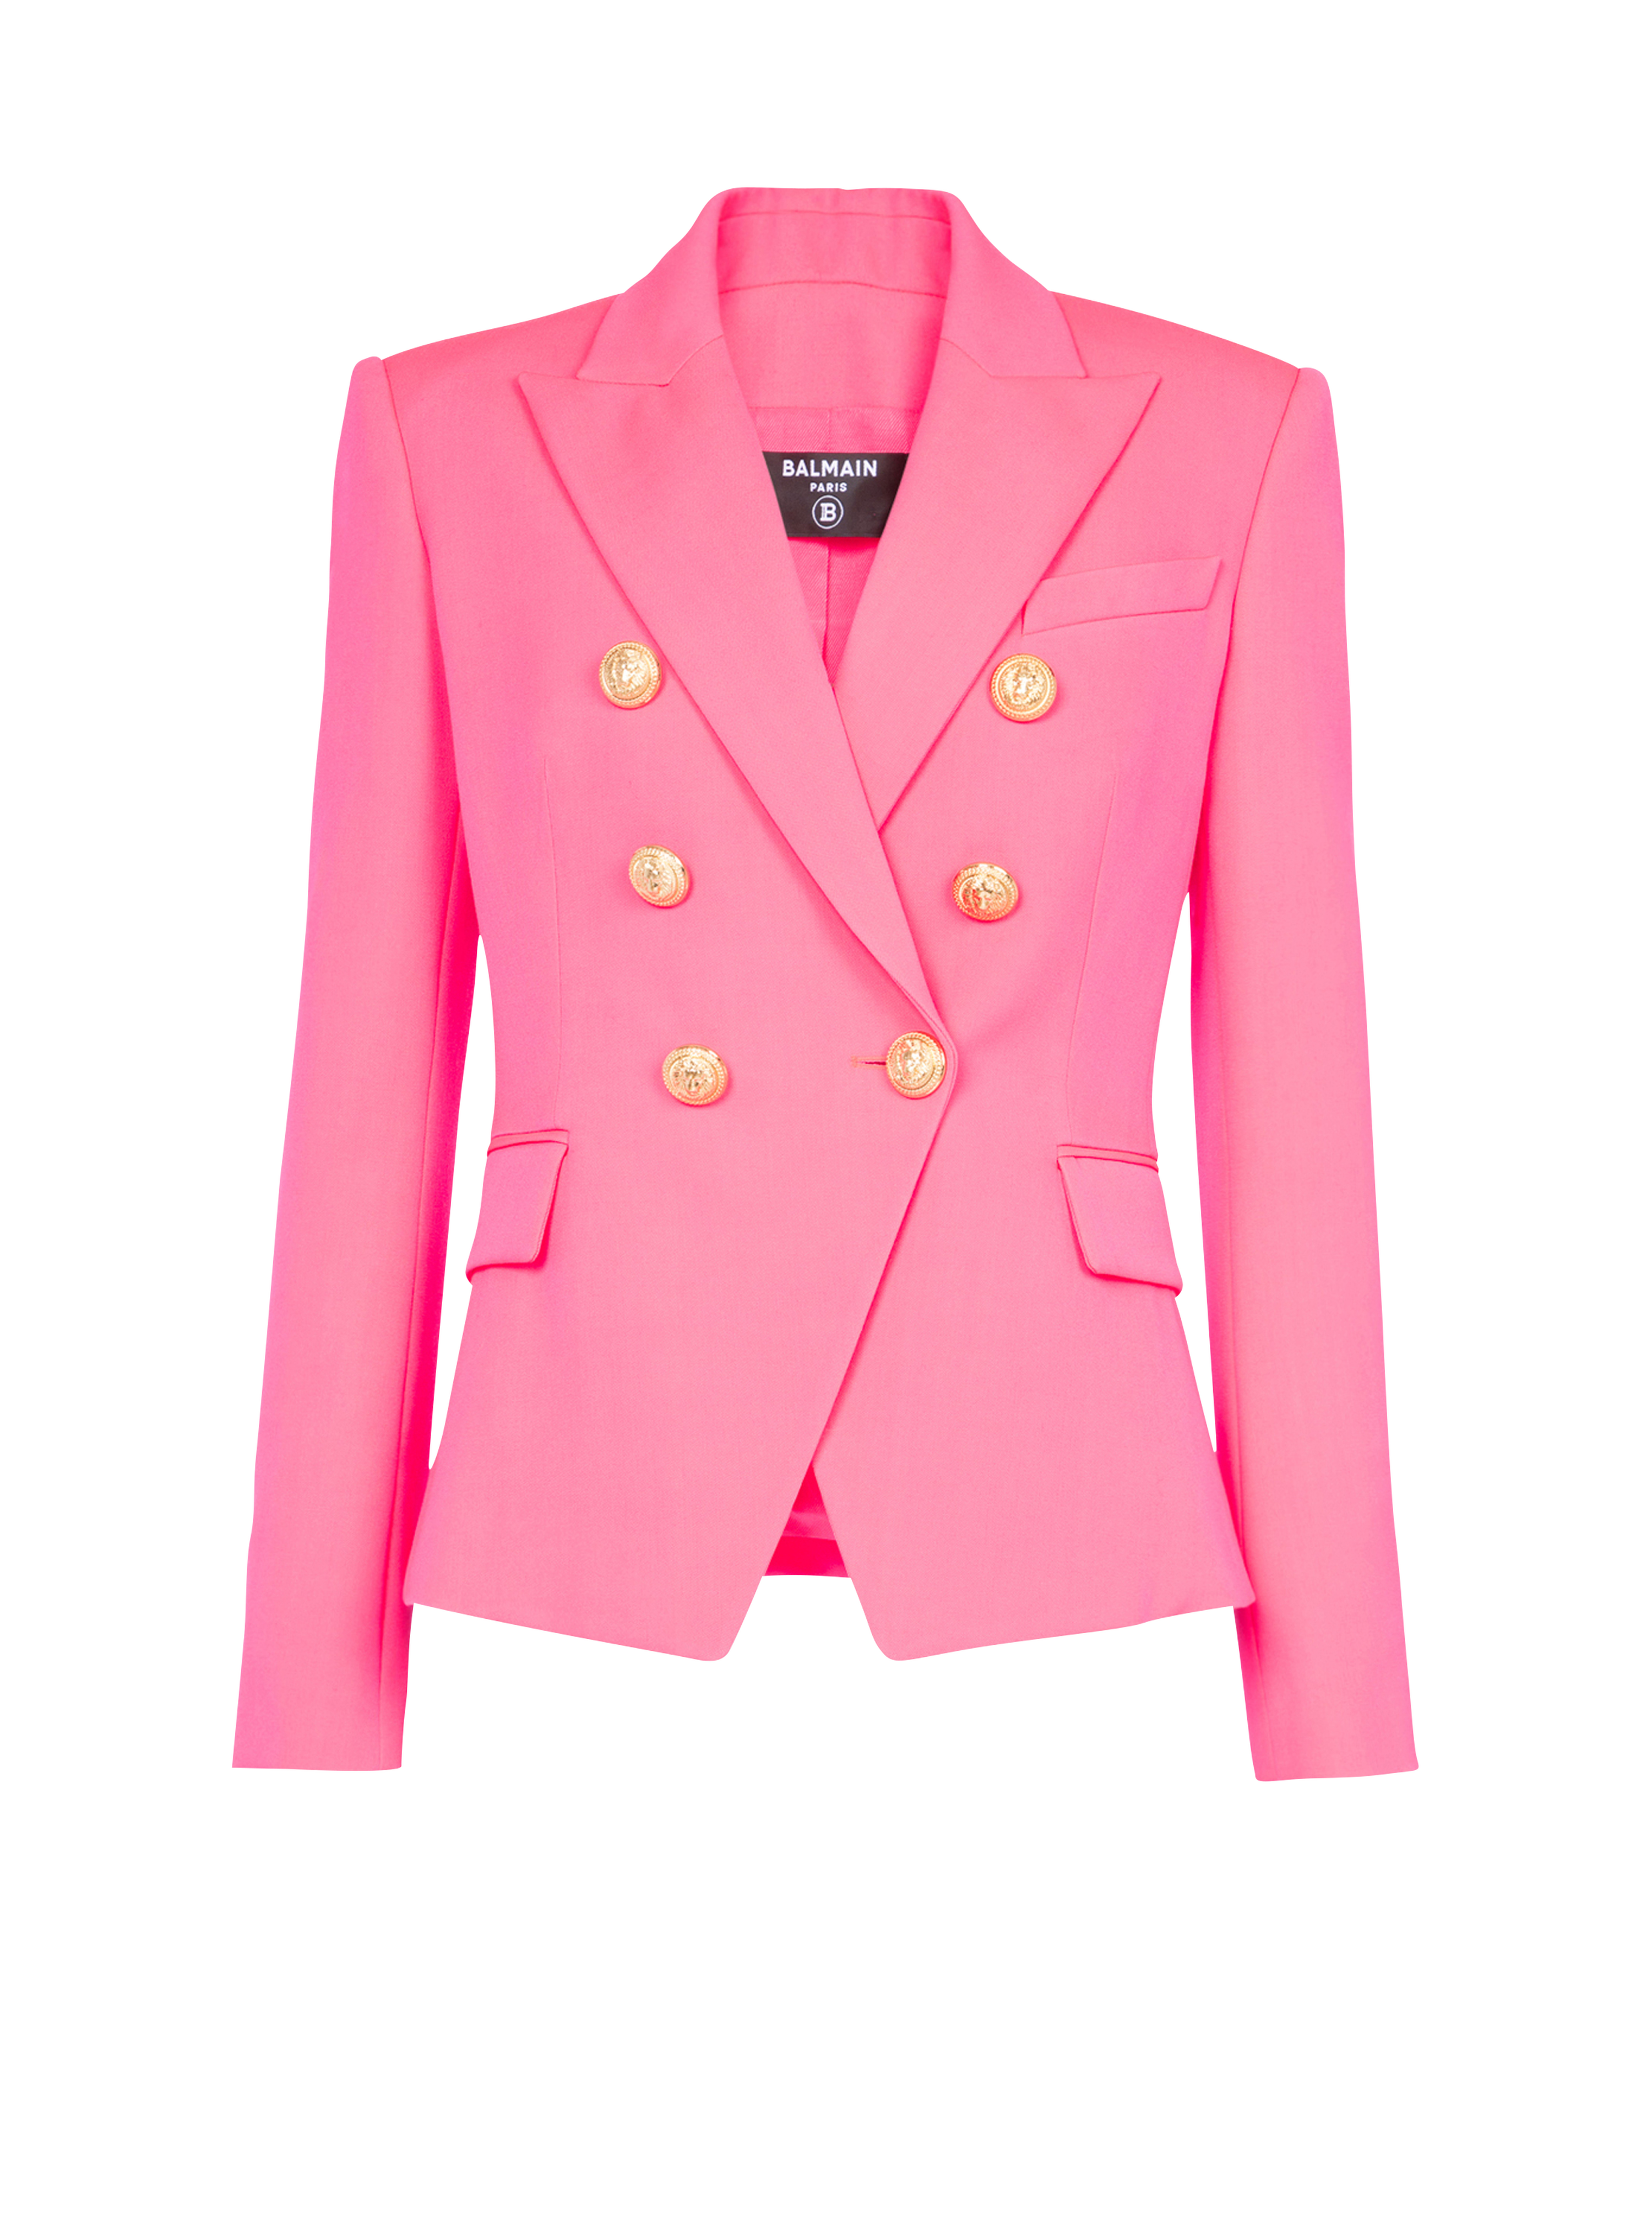 더블 버튼 여밈 디테일 재킷, 핑크색